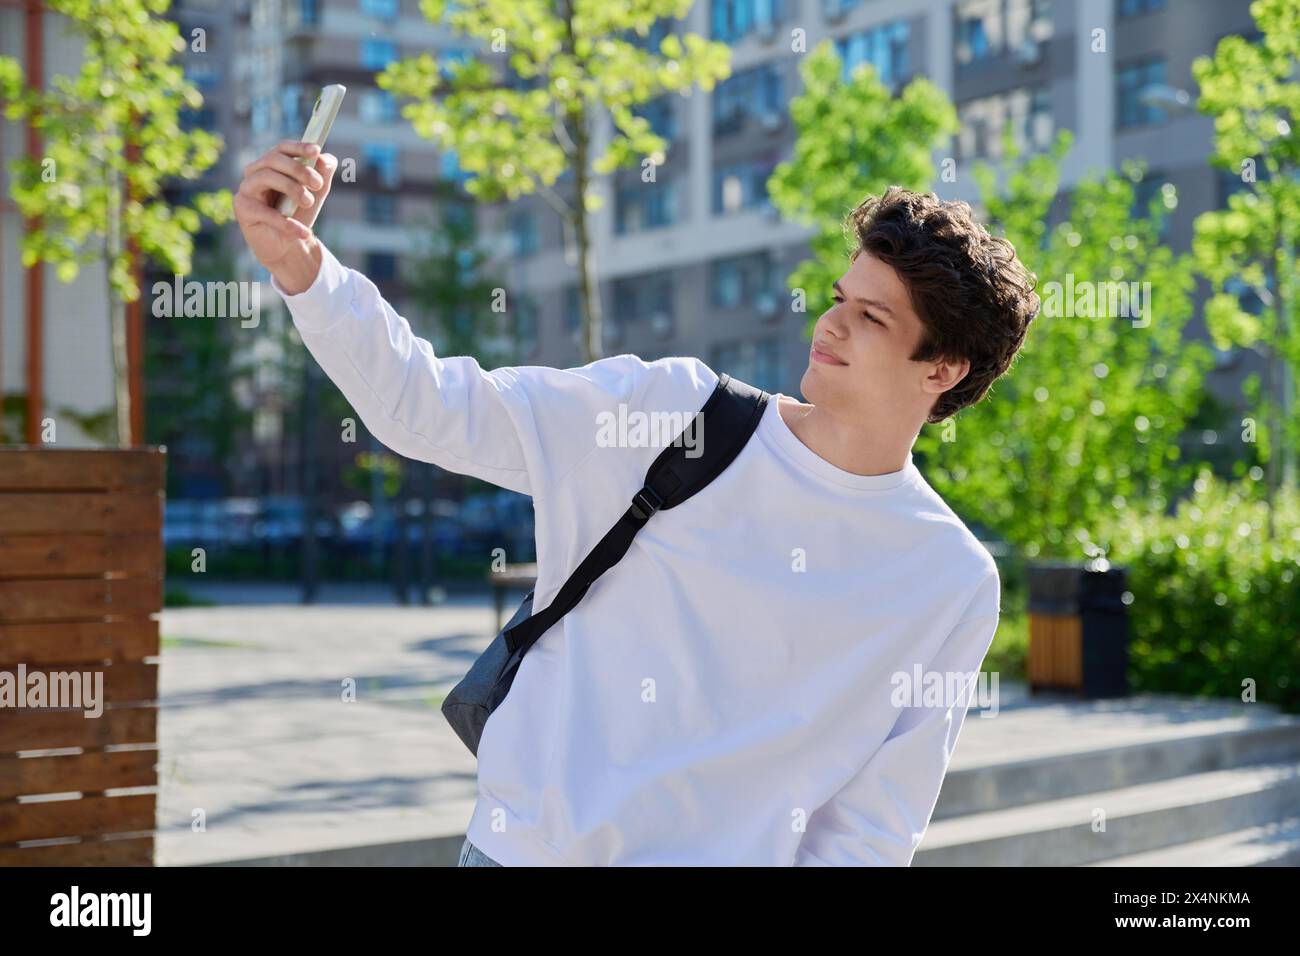 Junger Schüler mit Smartphone in der Hand, der ein Selfie-Porträt macht Stockfoto